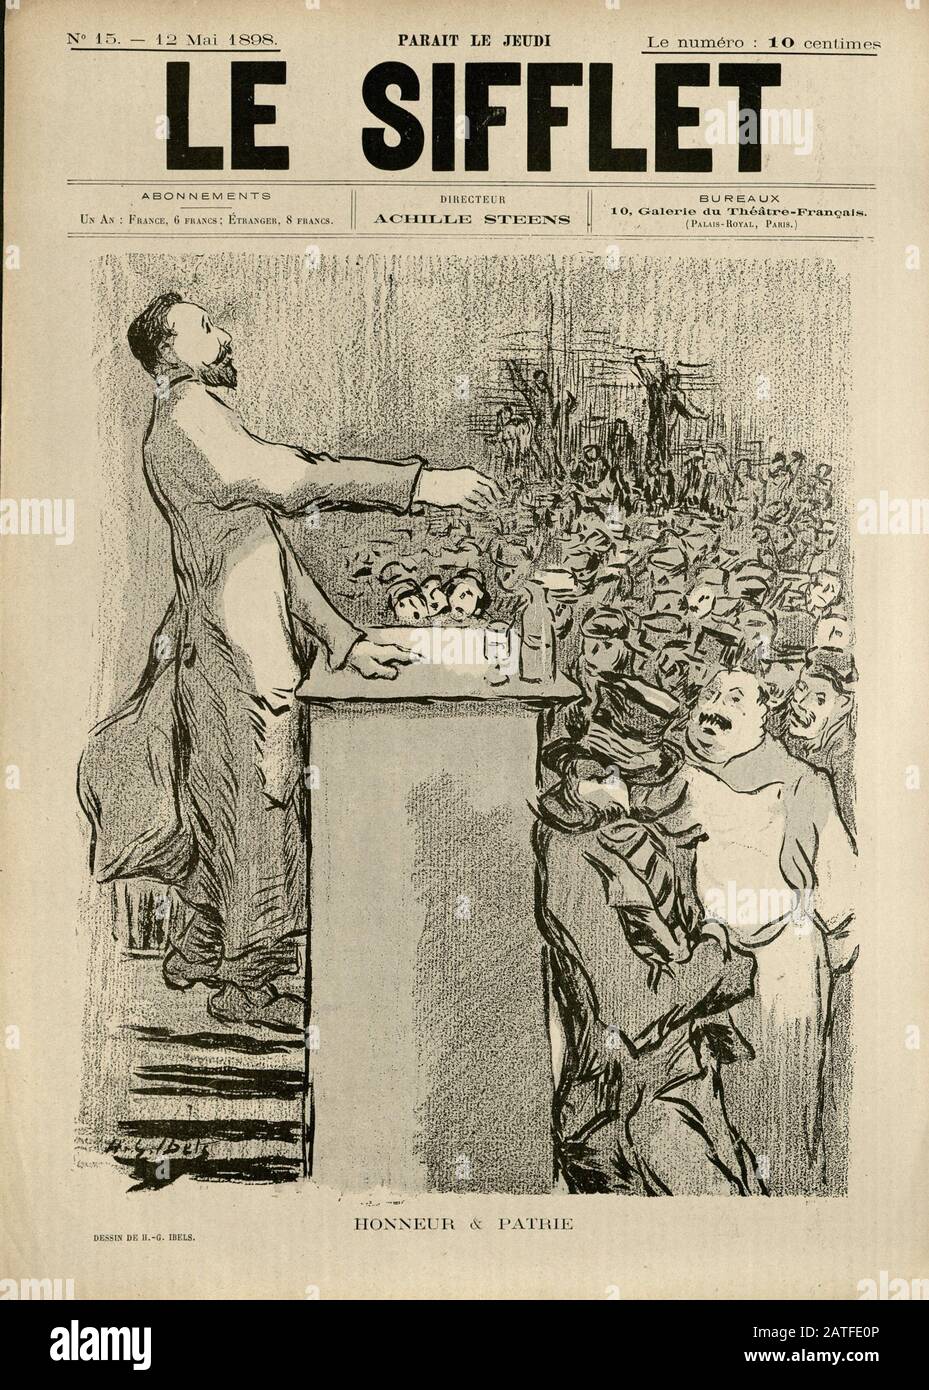 L'affaire Dreyfus 1894-1906 - Le Ensemble marionnettes, le 12 mai 1898 - journal illustré en Français Banque D'Images